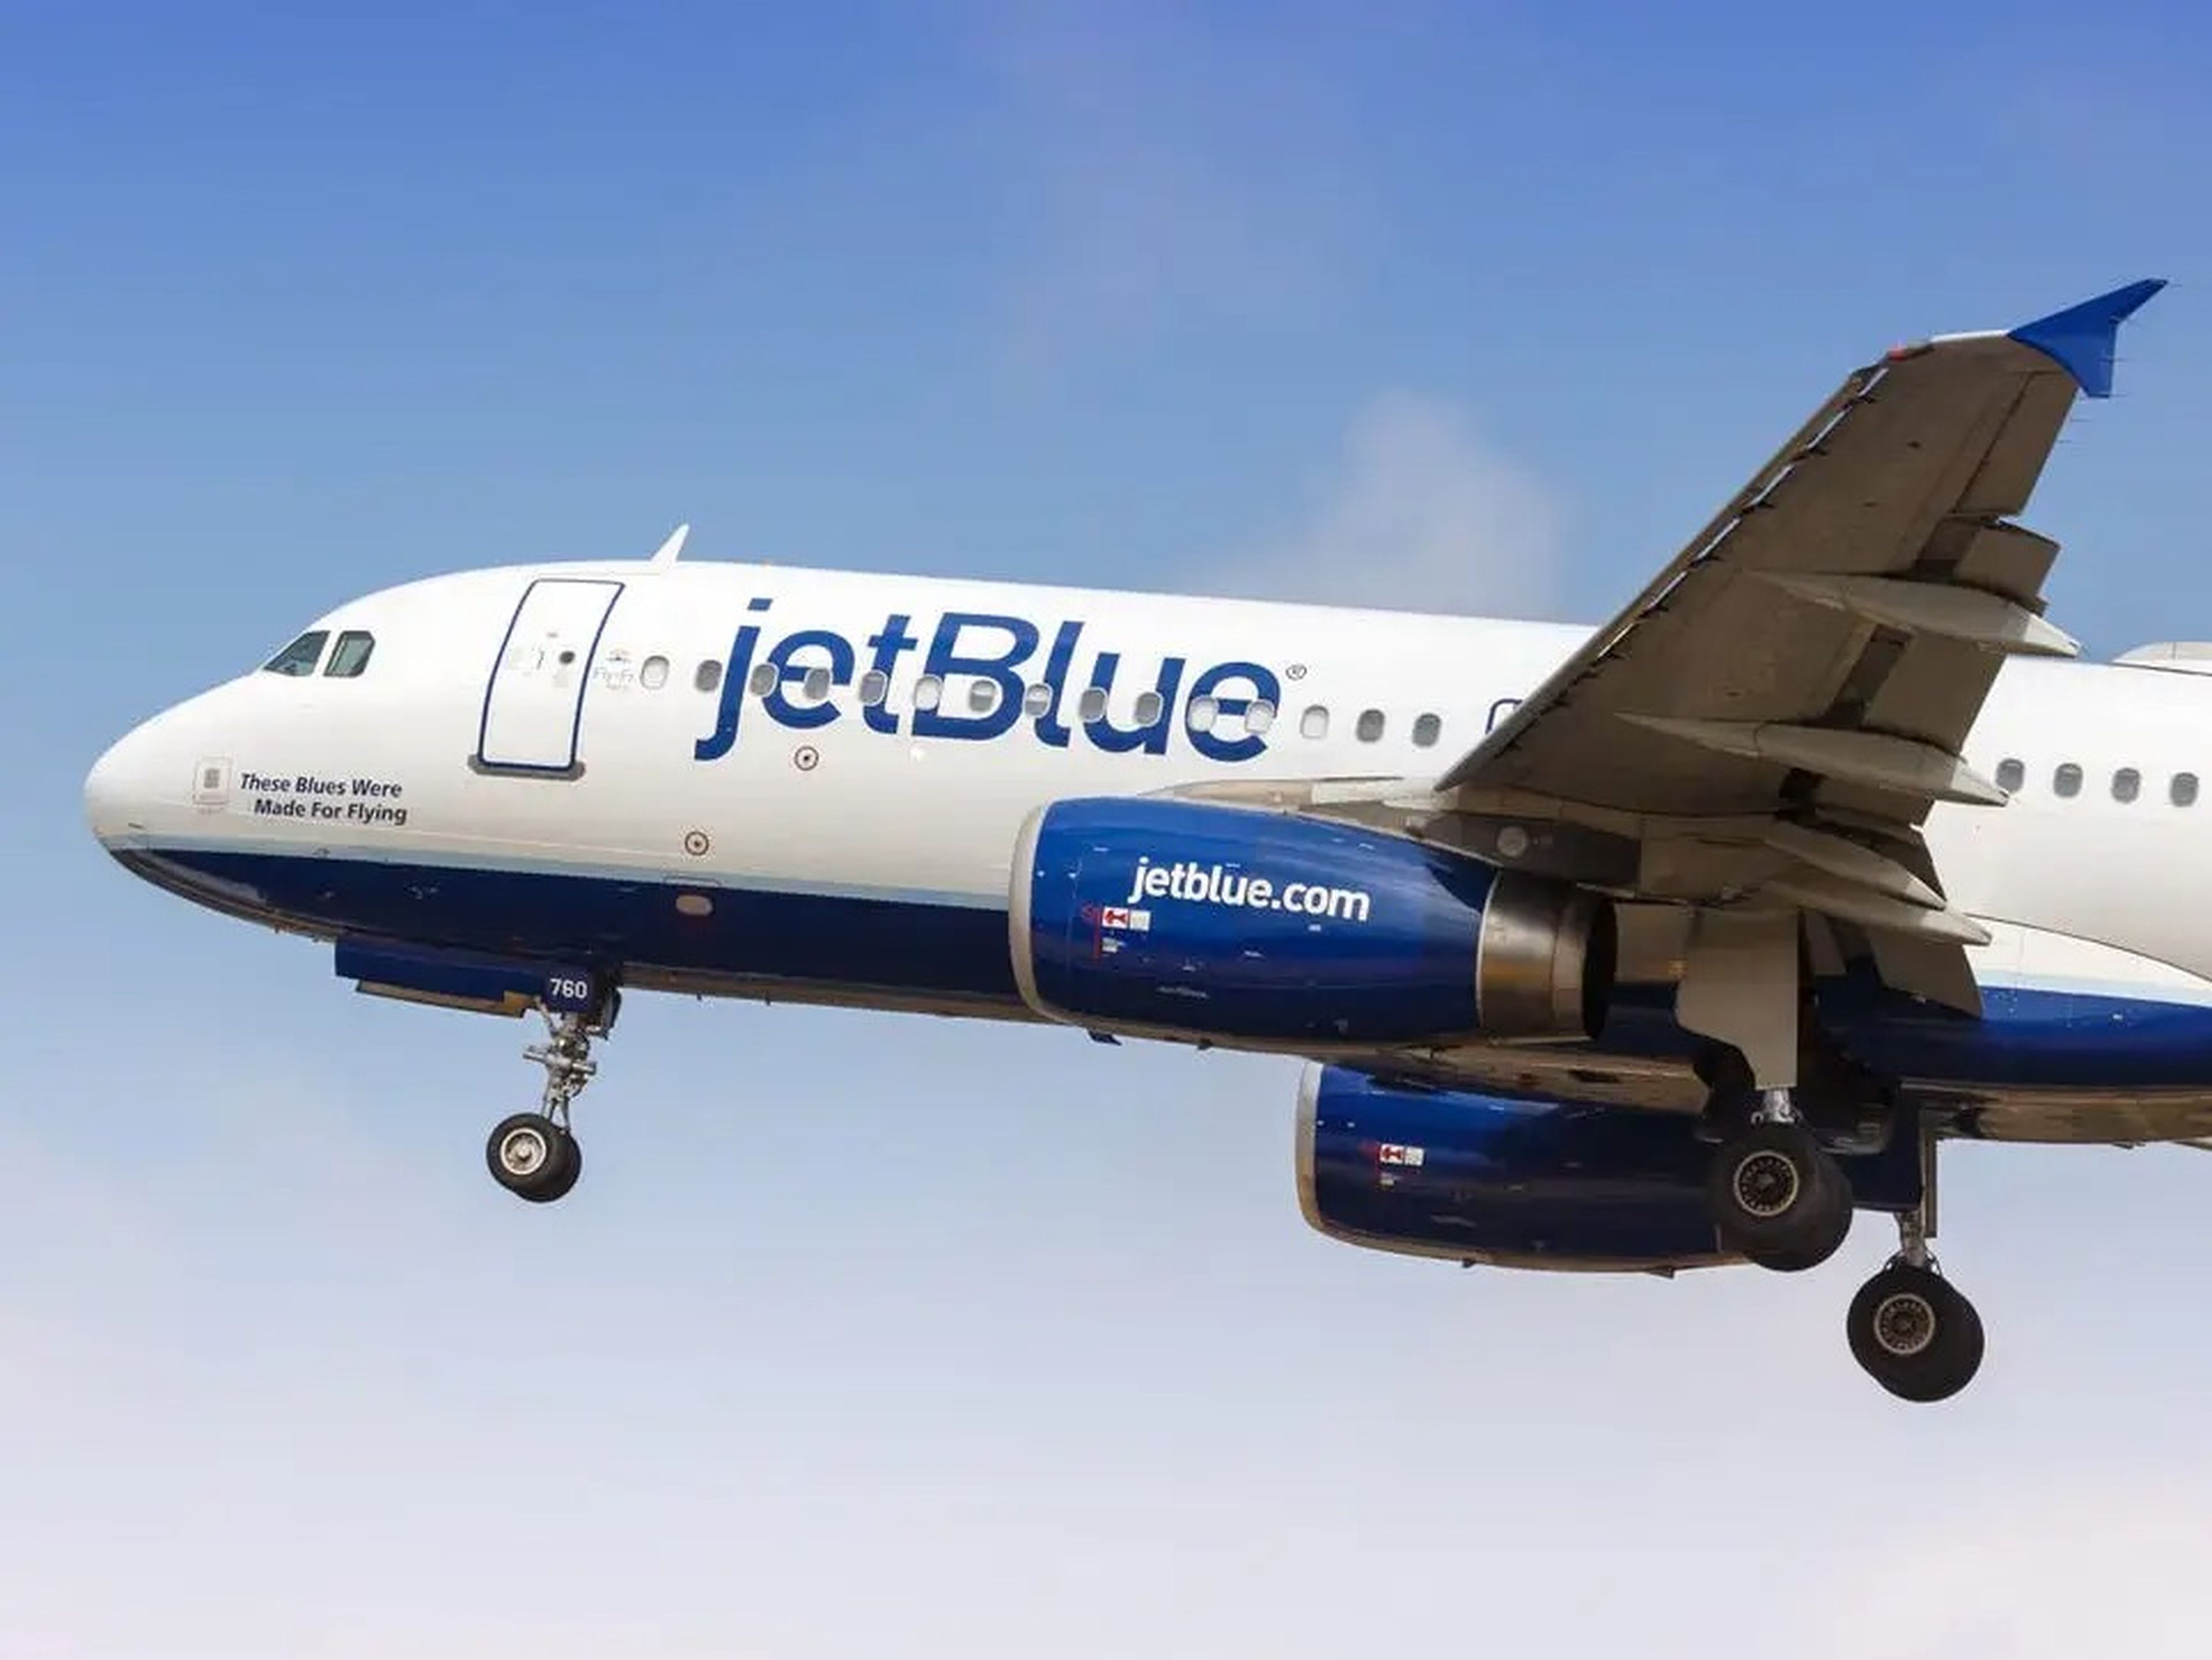 JetBlue A320 aircraft.